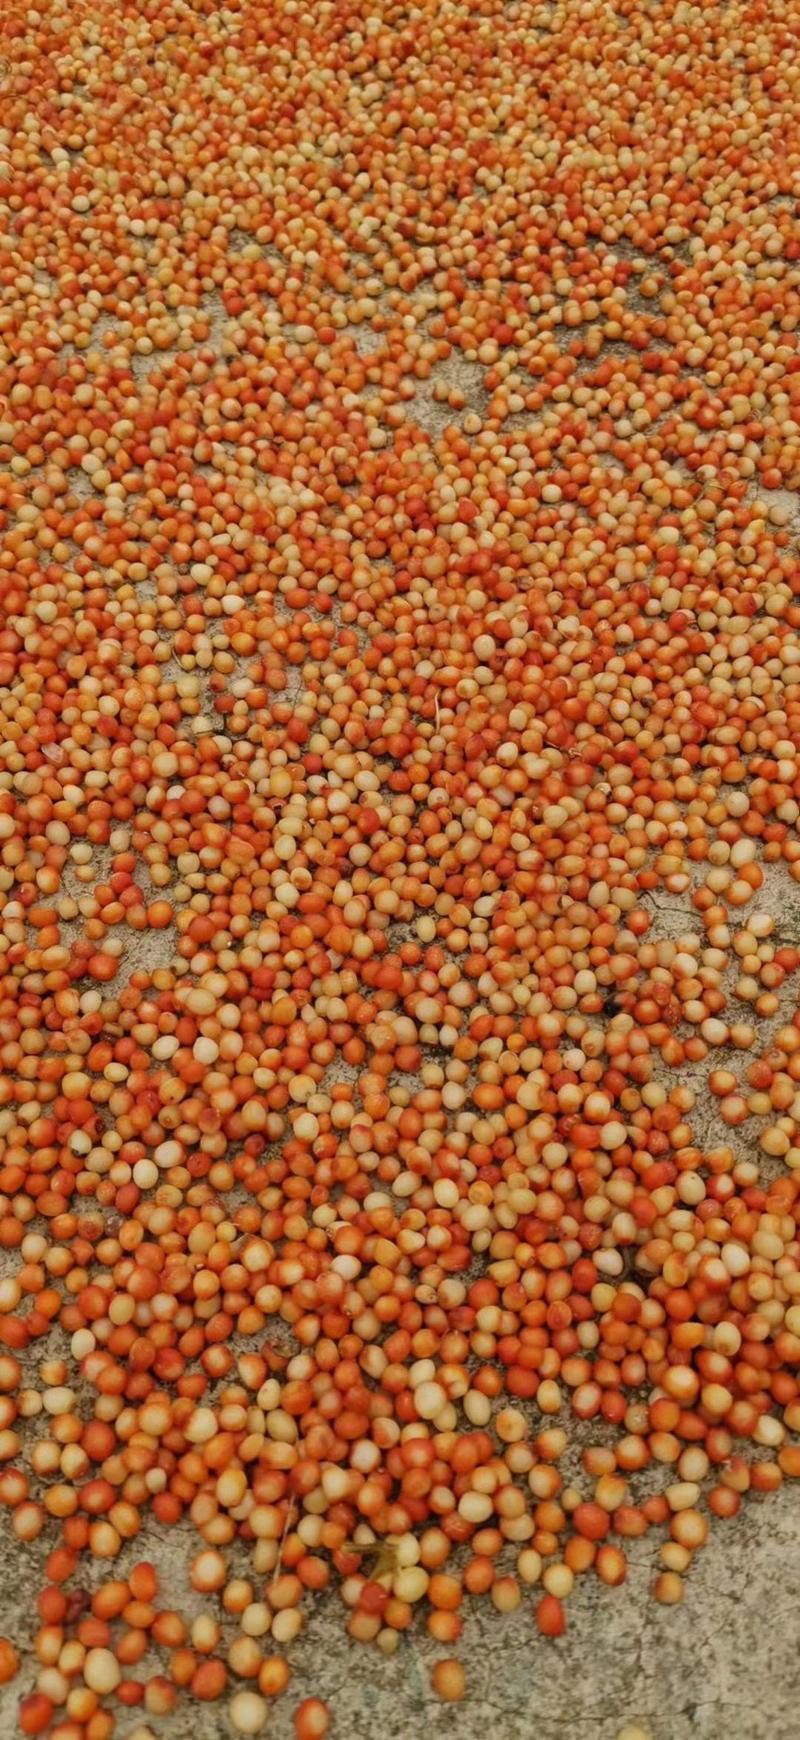 黄精种子.滇黄精籽种子、红花滇黄精种子、包种植技术。